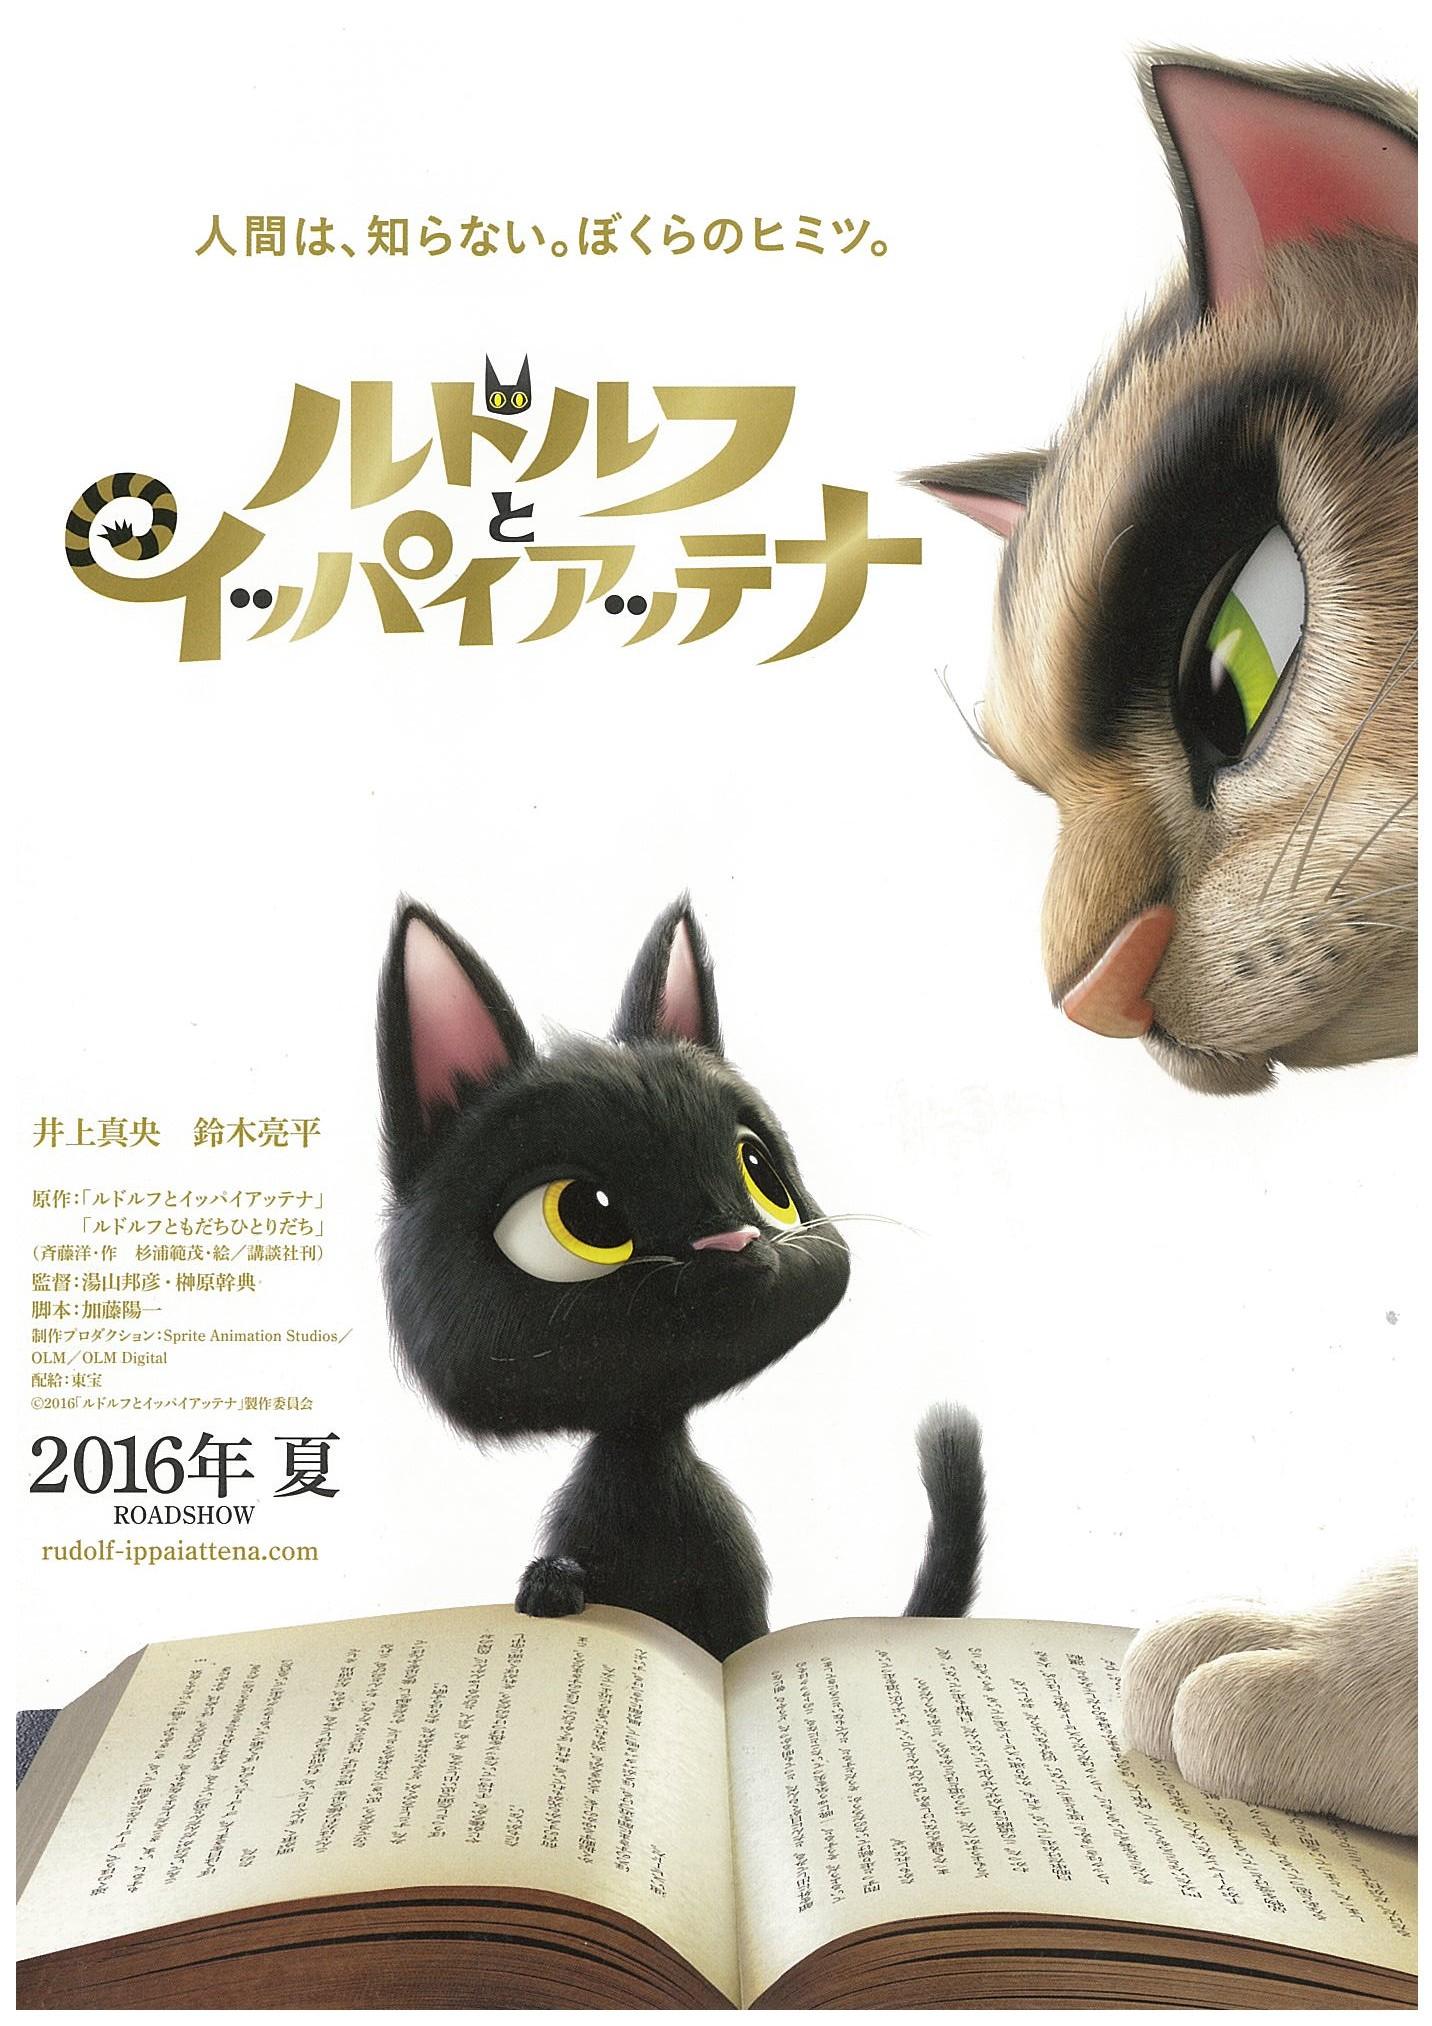 Постер фильма Жил-был кот | Rudorufu to ippai attena